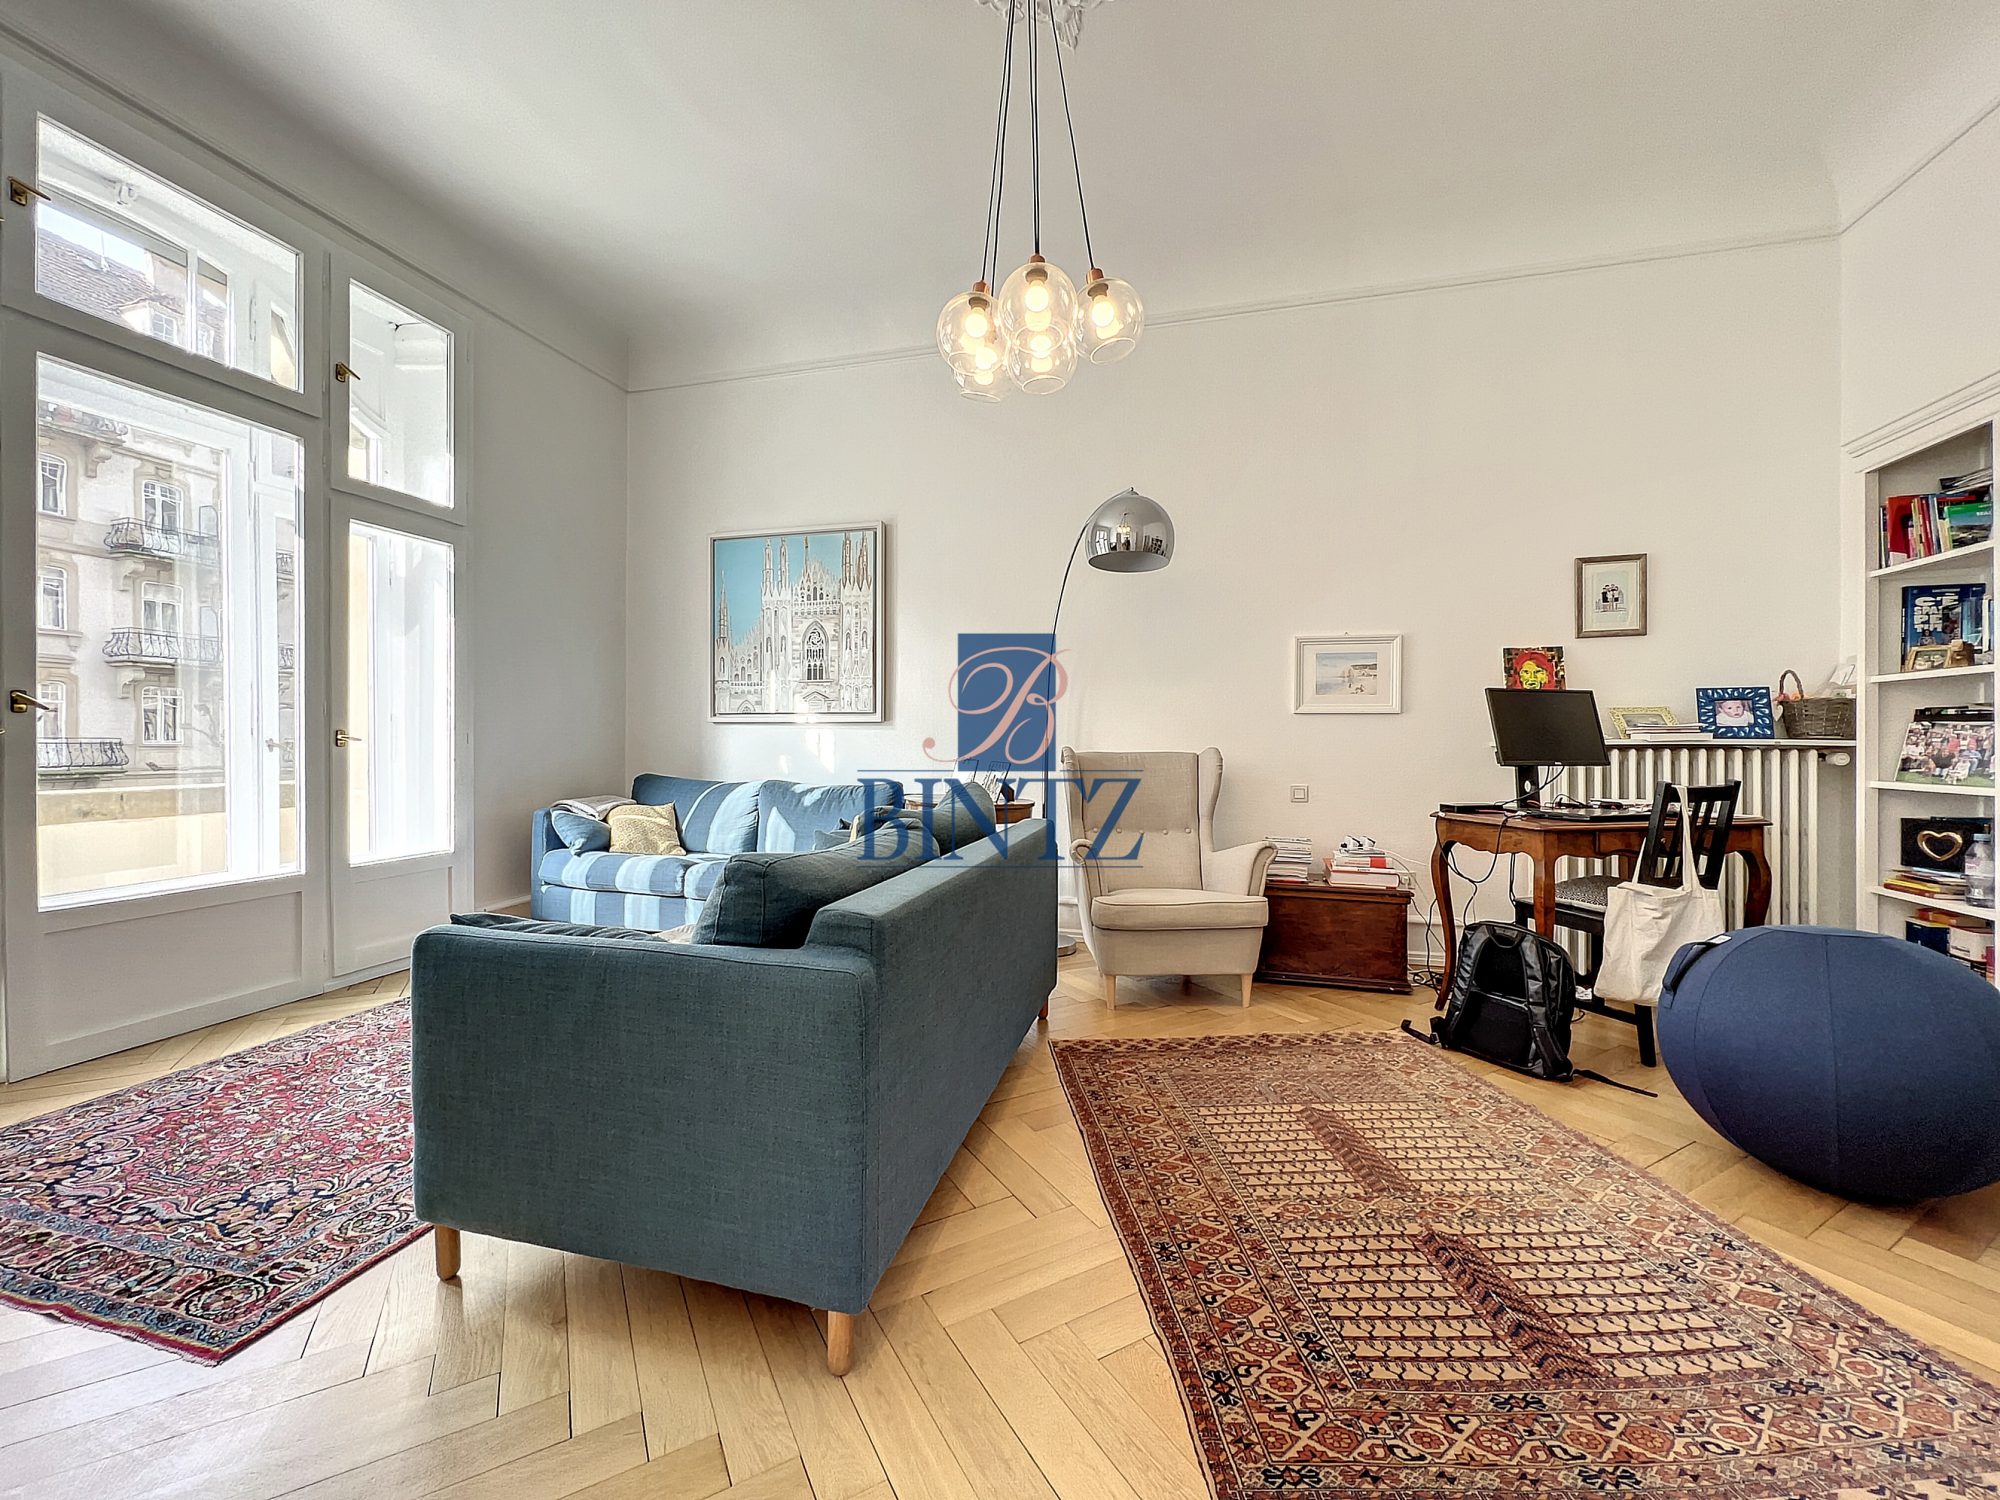 Exceptionnel 5 pièces avec balcon - location appartement Strasbourg - Bintz Immobilier - 7